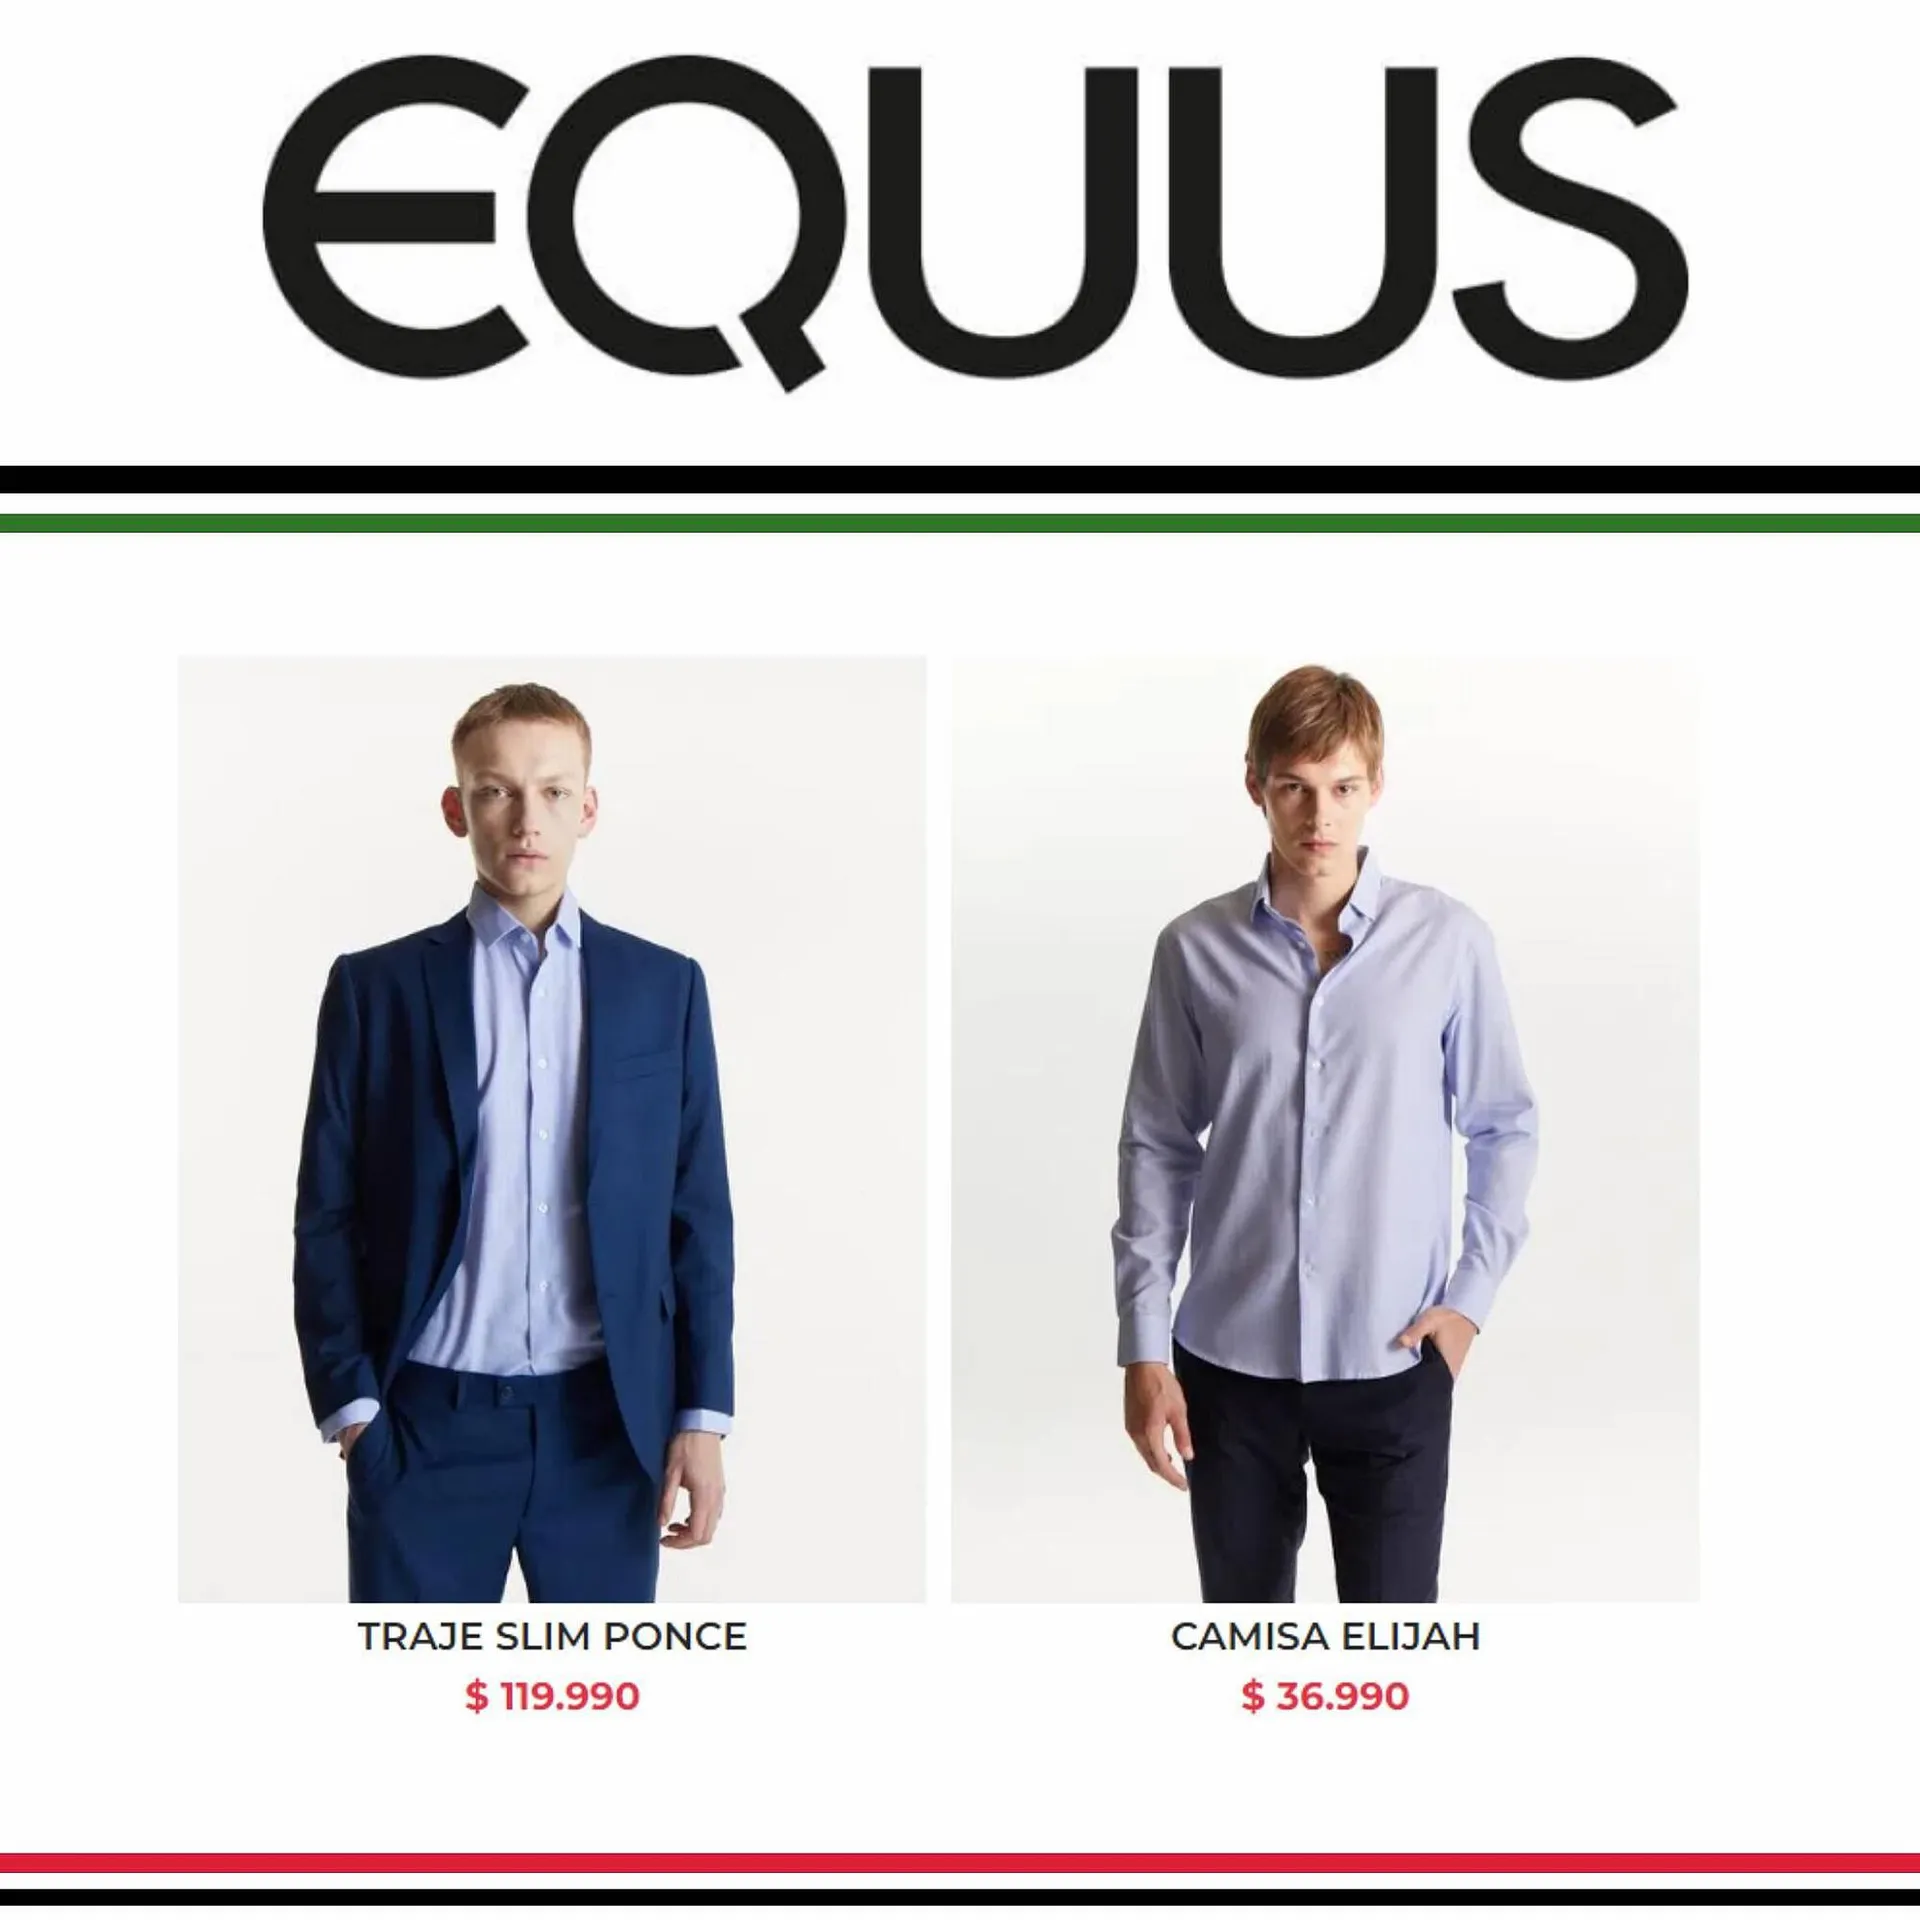 Catálogo Equus - 2